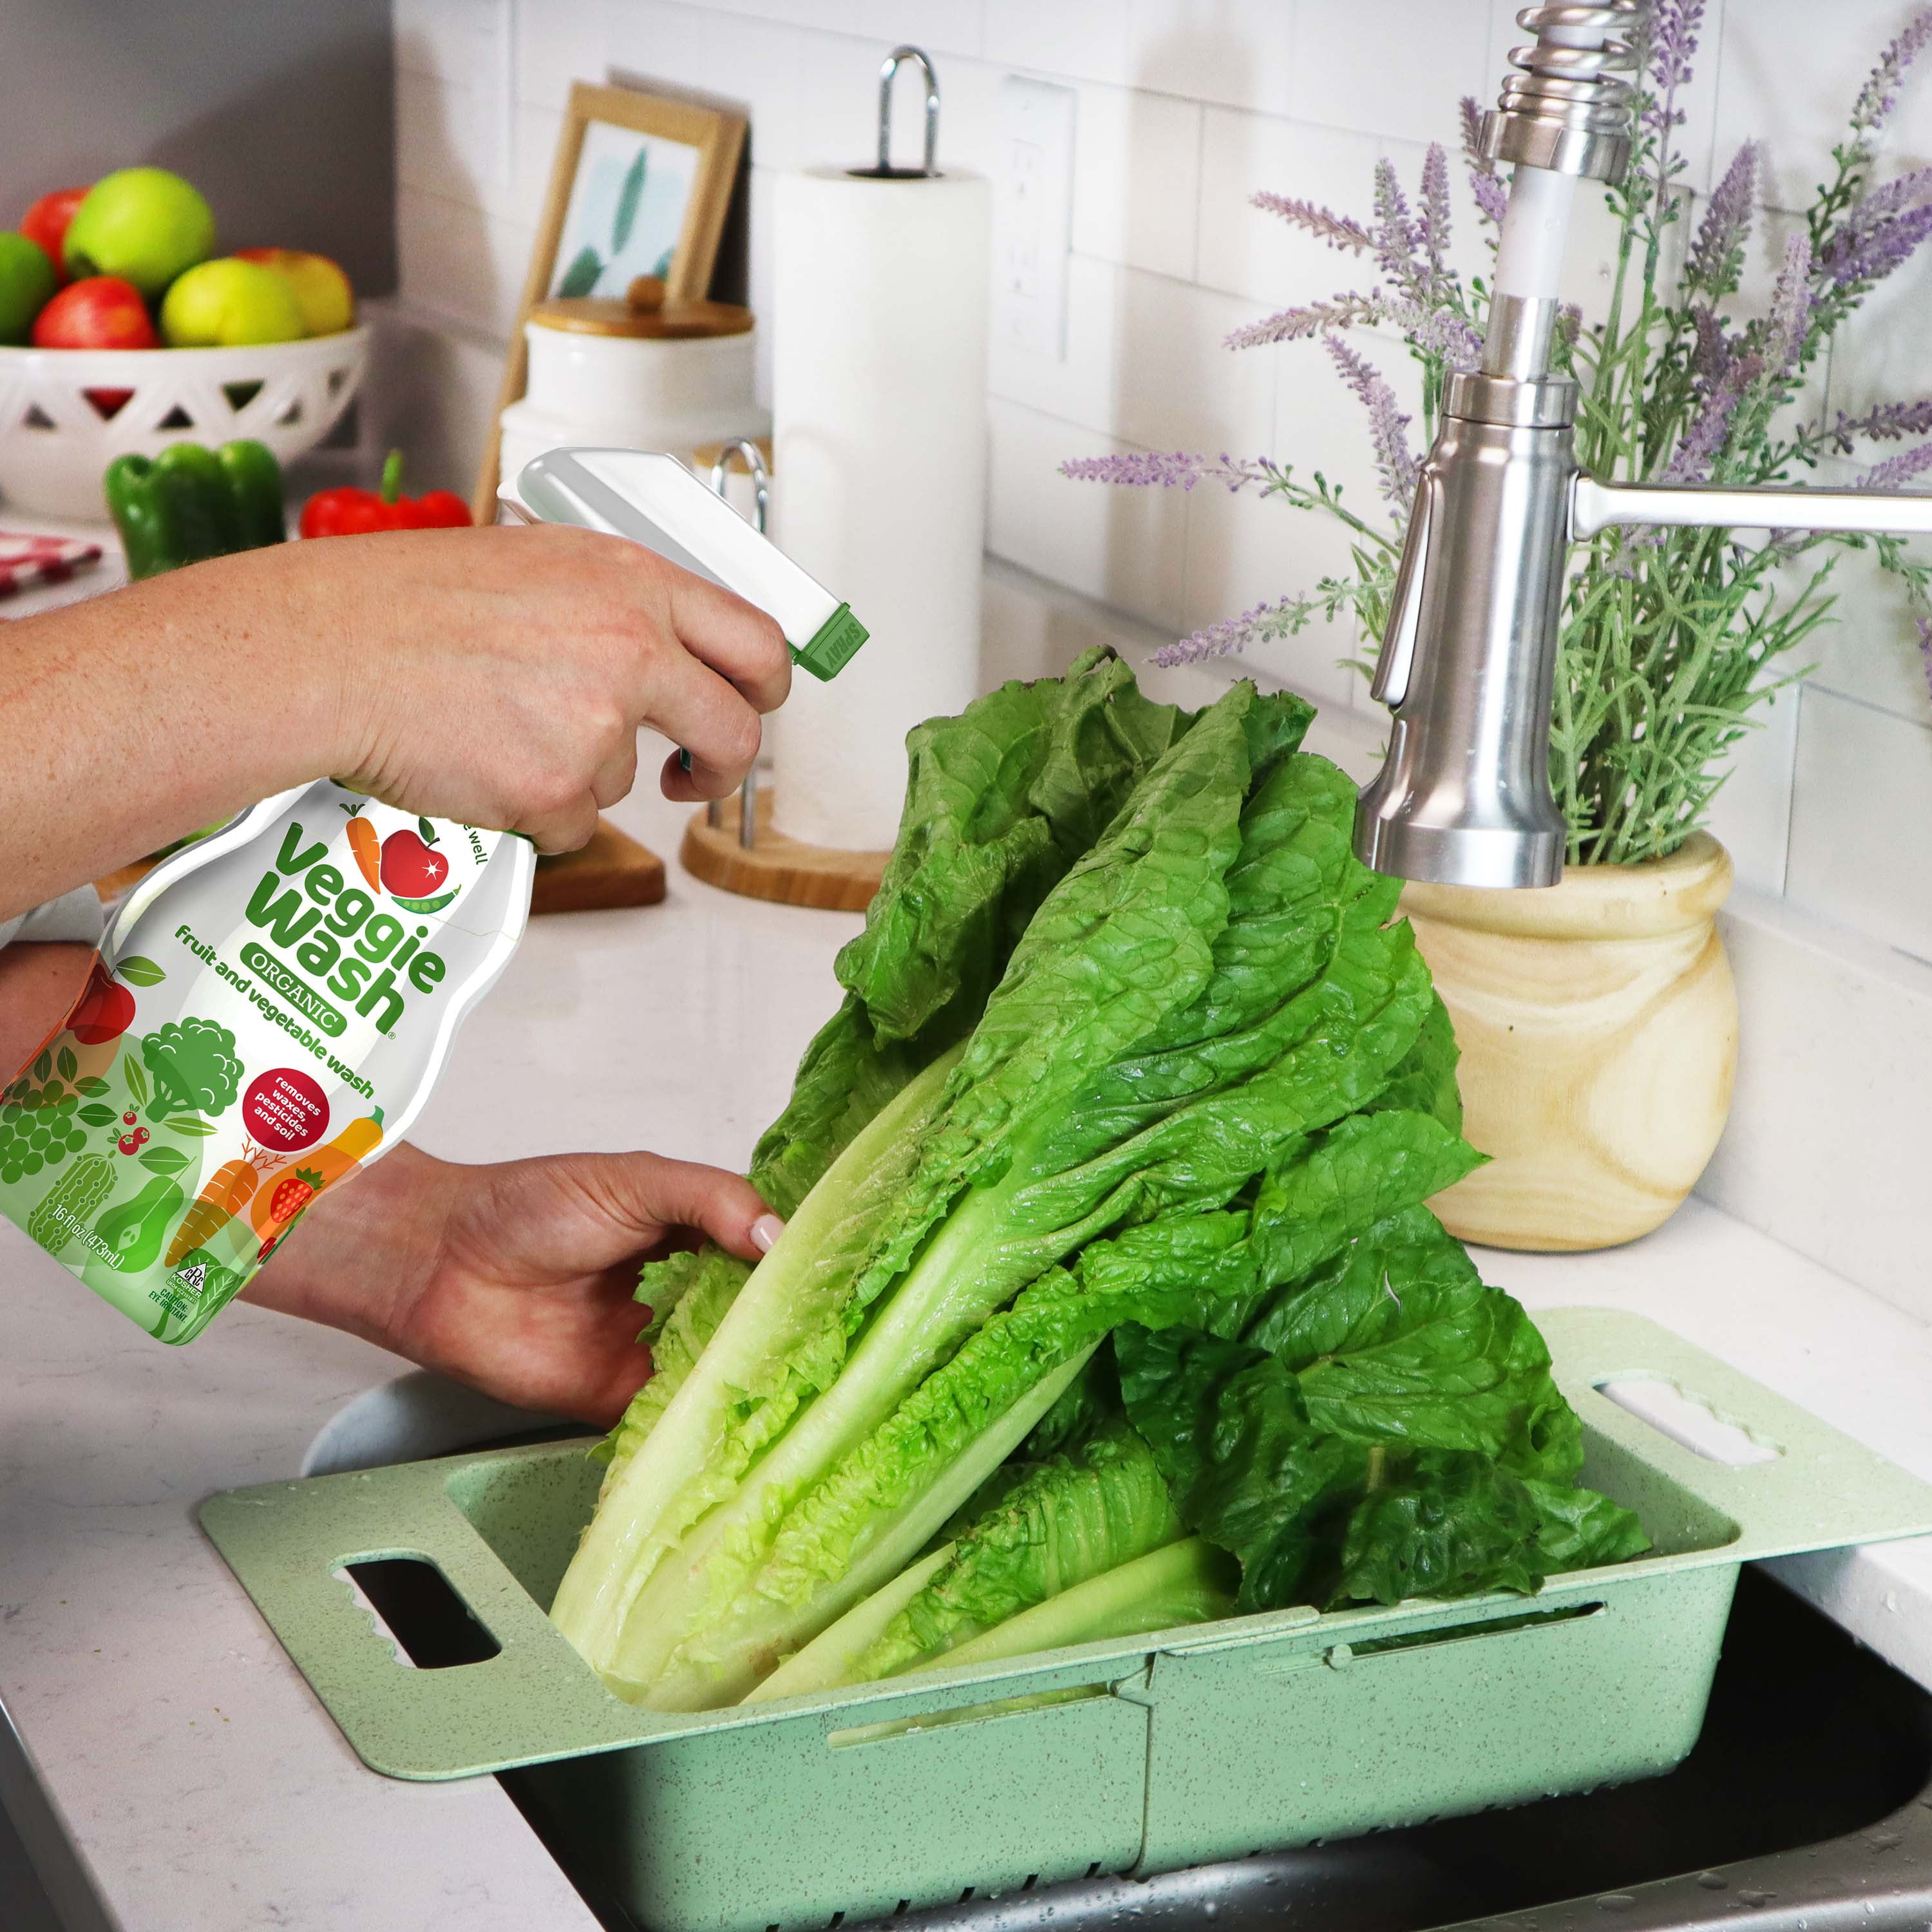 Veggie Wash® All Natural Fruit & Vegetable Wash, 16 fl oz - Kroger